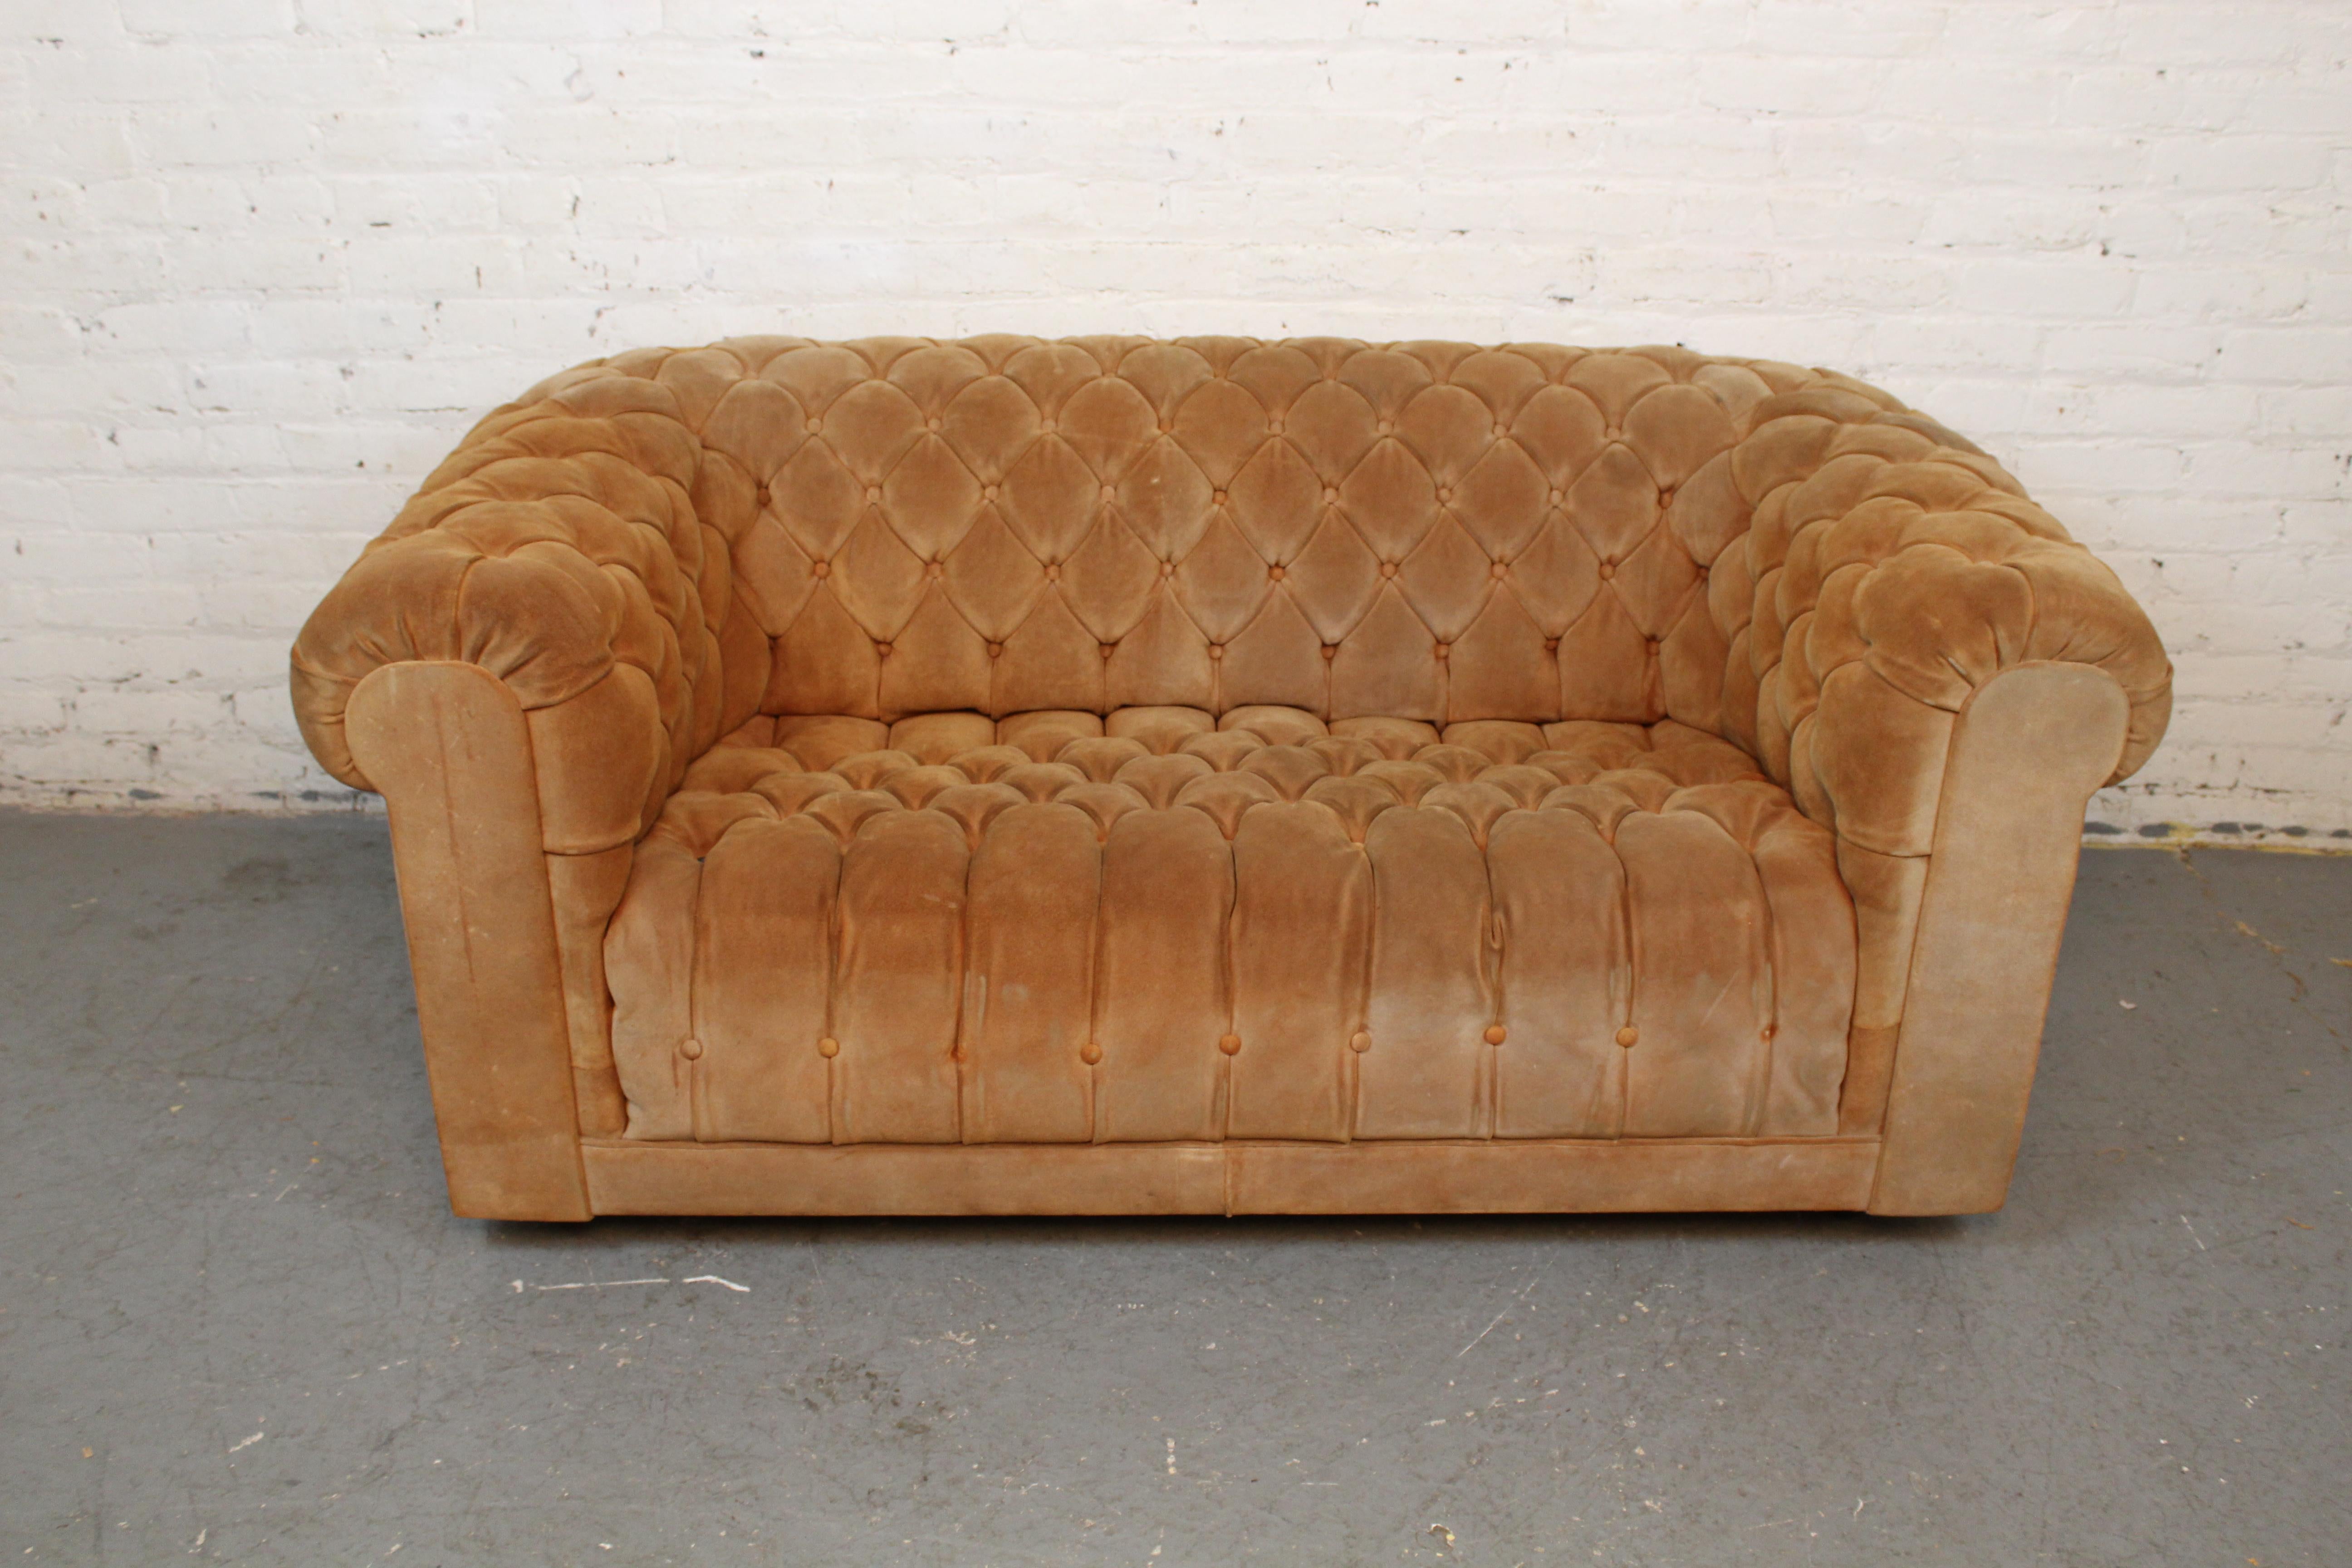 Finden Sie selbst heraus, was das Chesterfield zum weltweit beliebtesten Sofa aller Zeiten gemacht hat - mit diesem schönen Zweisitzer aus Wildleder aus der Mitte des Jahrhunderts! Das ikonische Design geht auf Lord Philip Stanhope aus dem England